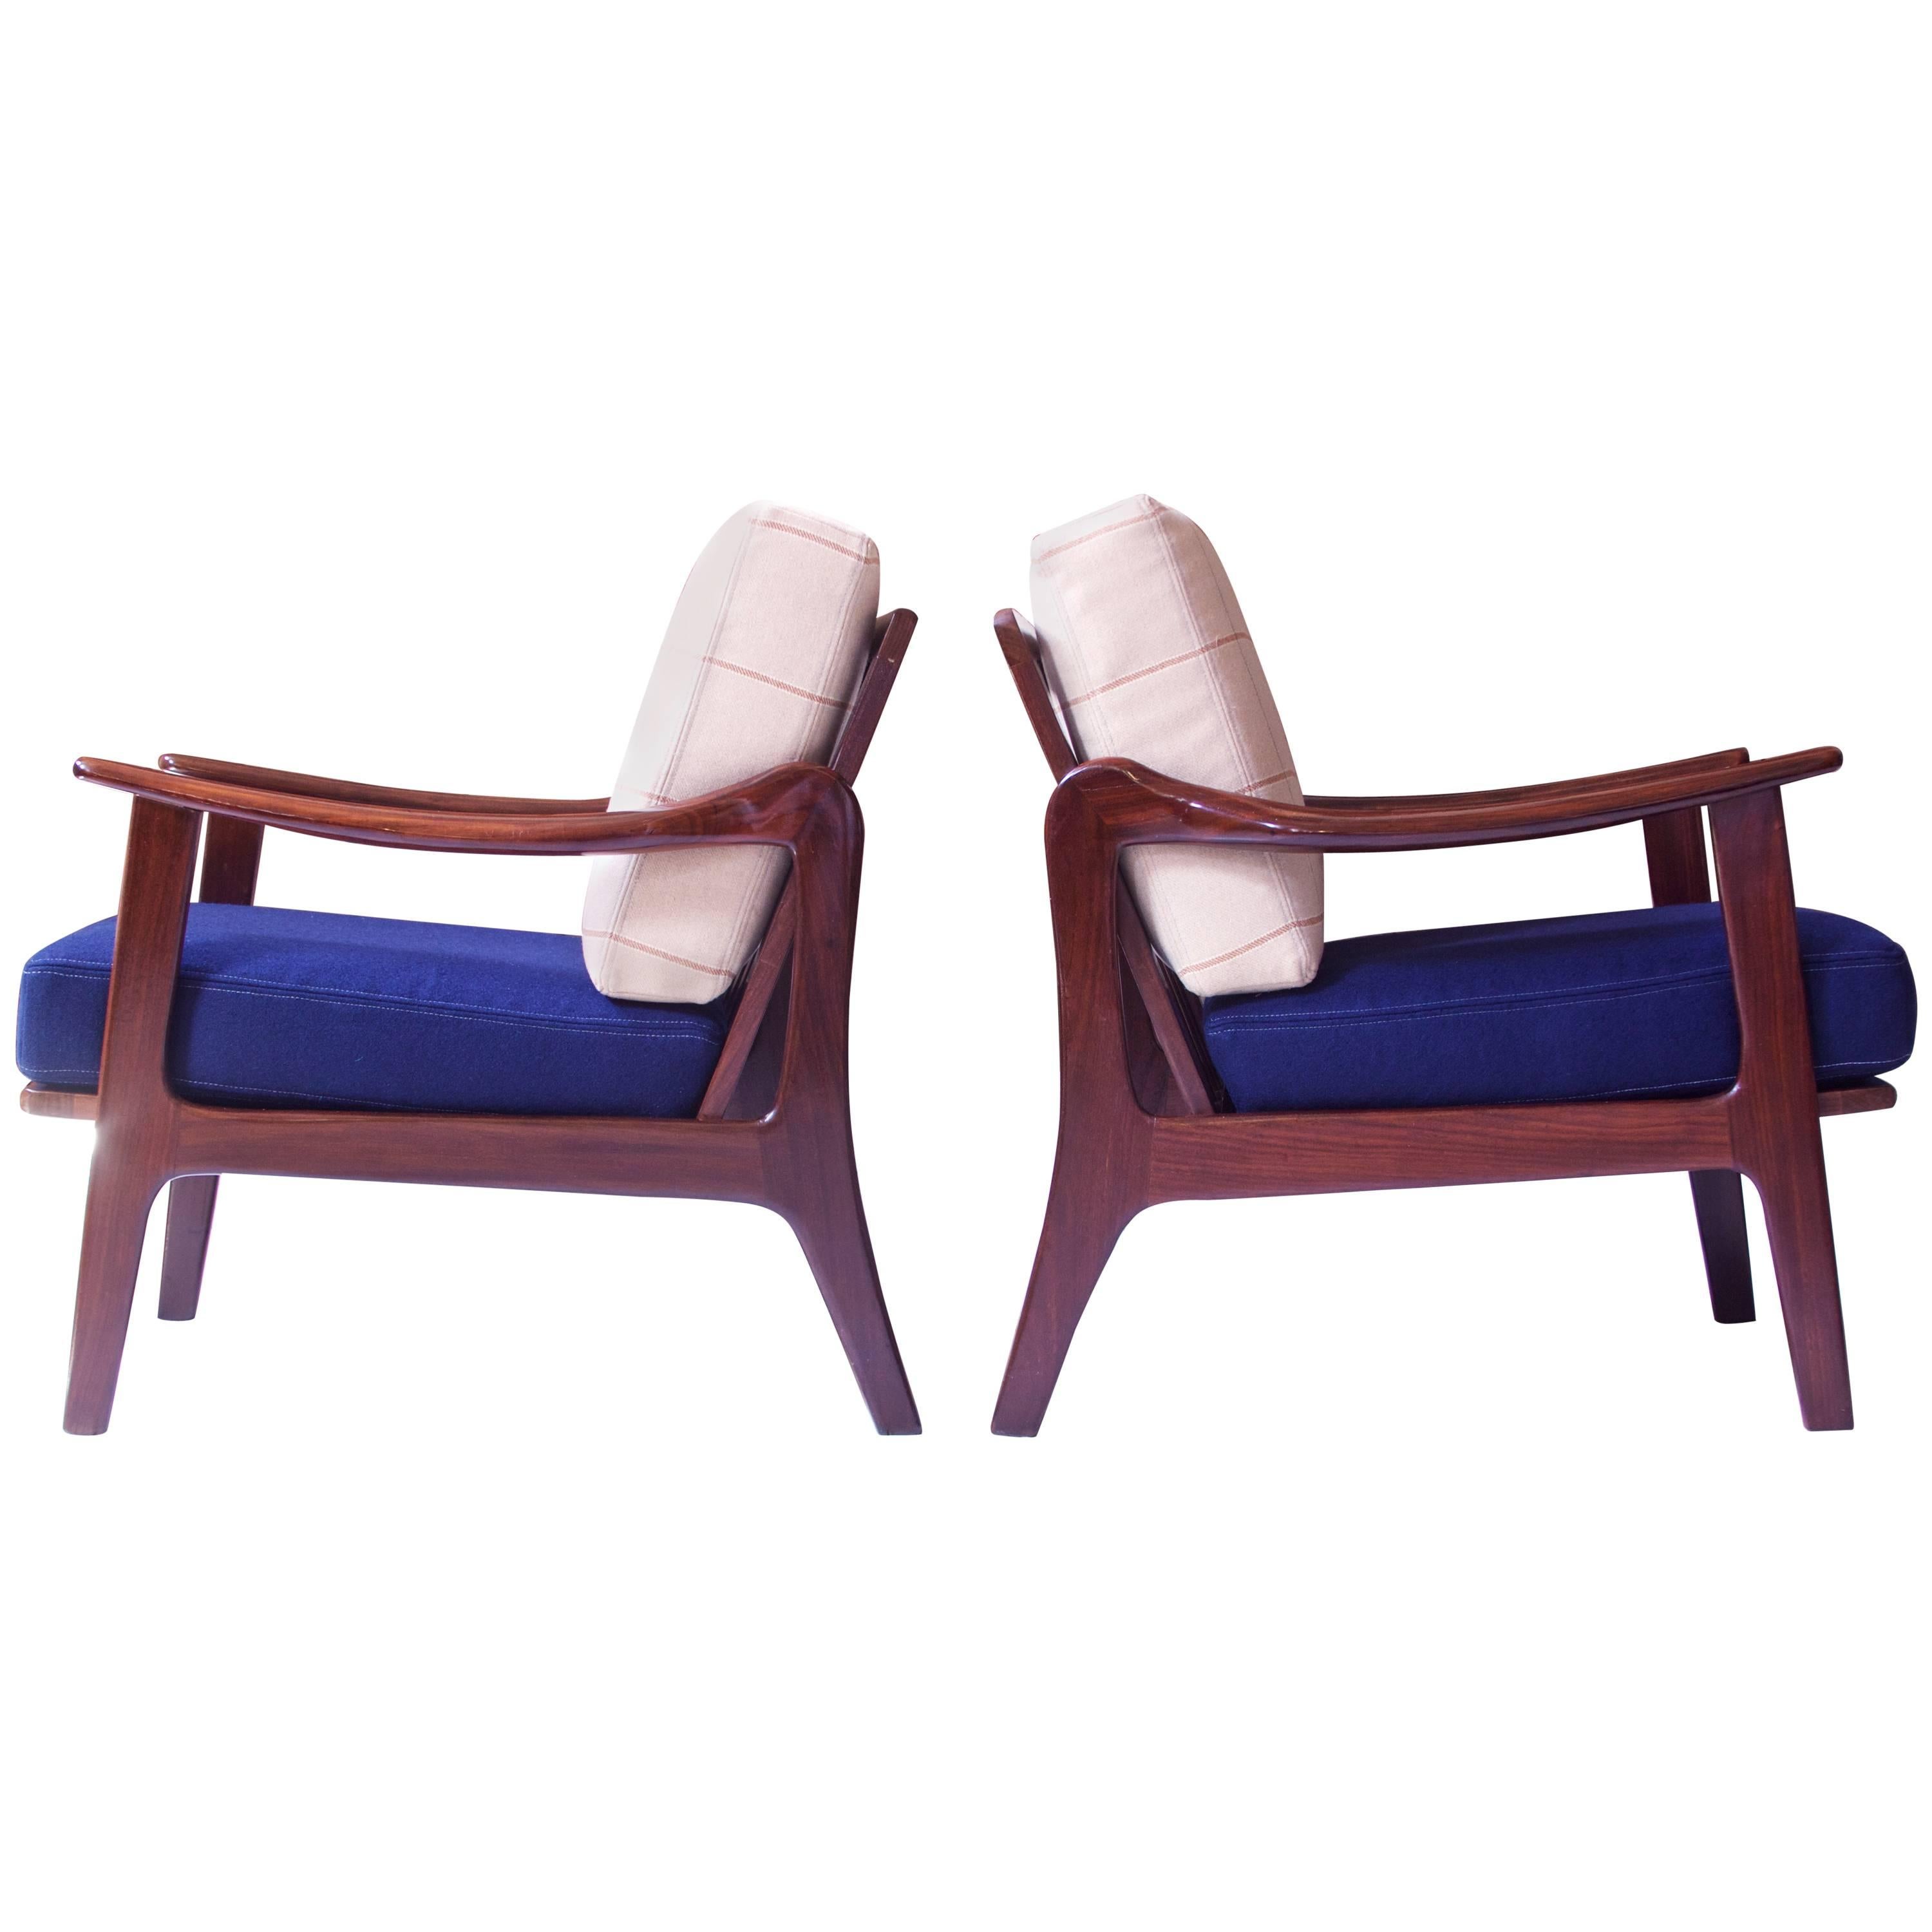 Pair of Vintage Fredrik A. Kayser Teak and Wool Lounge Chairs, Norway, 1950s